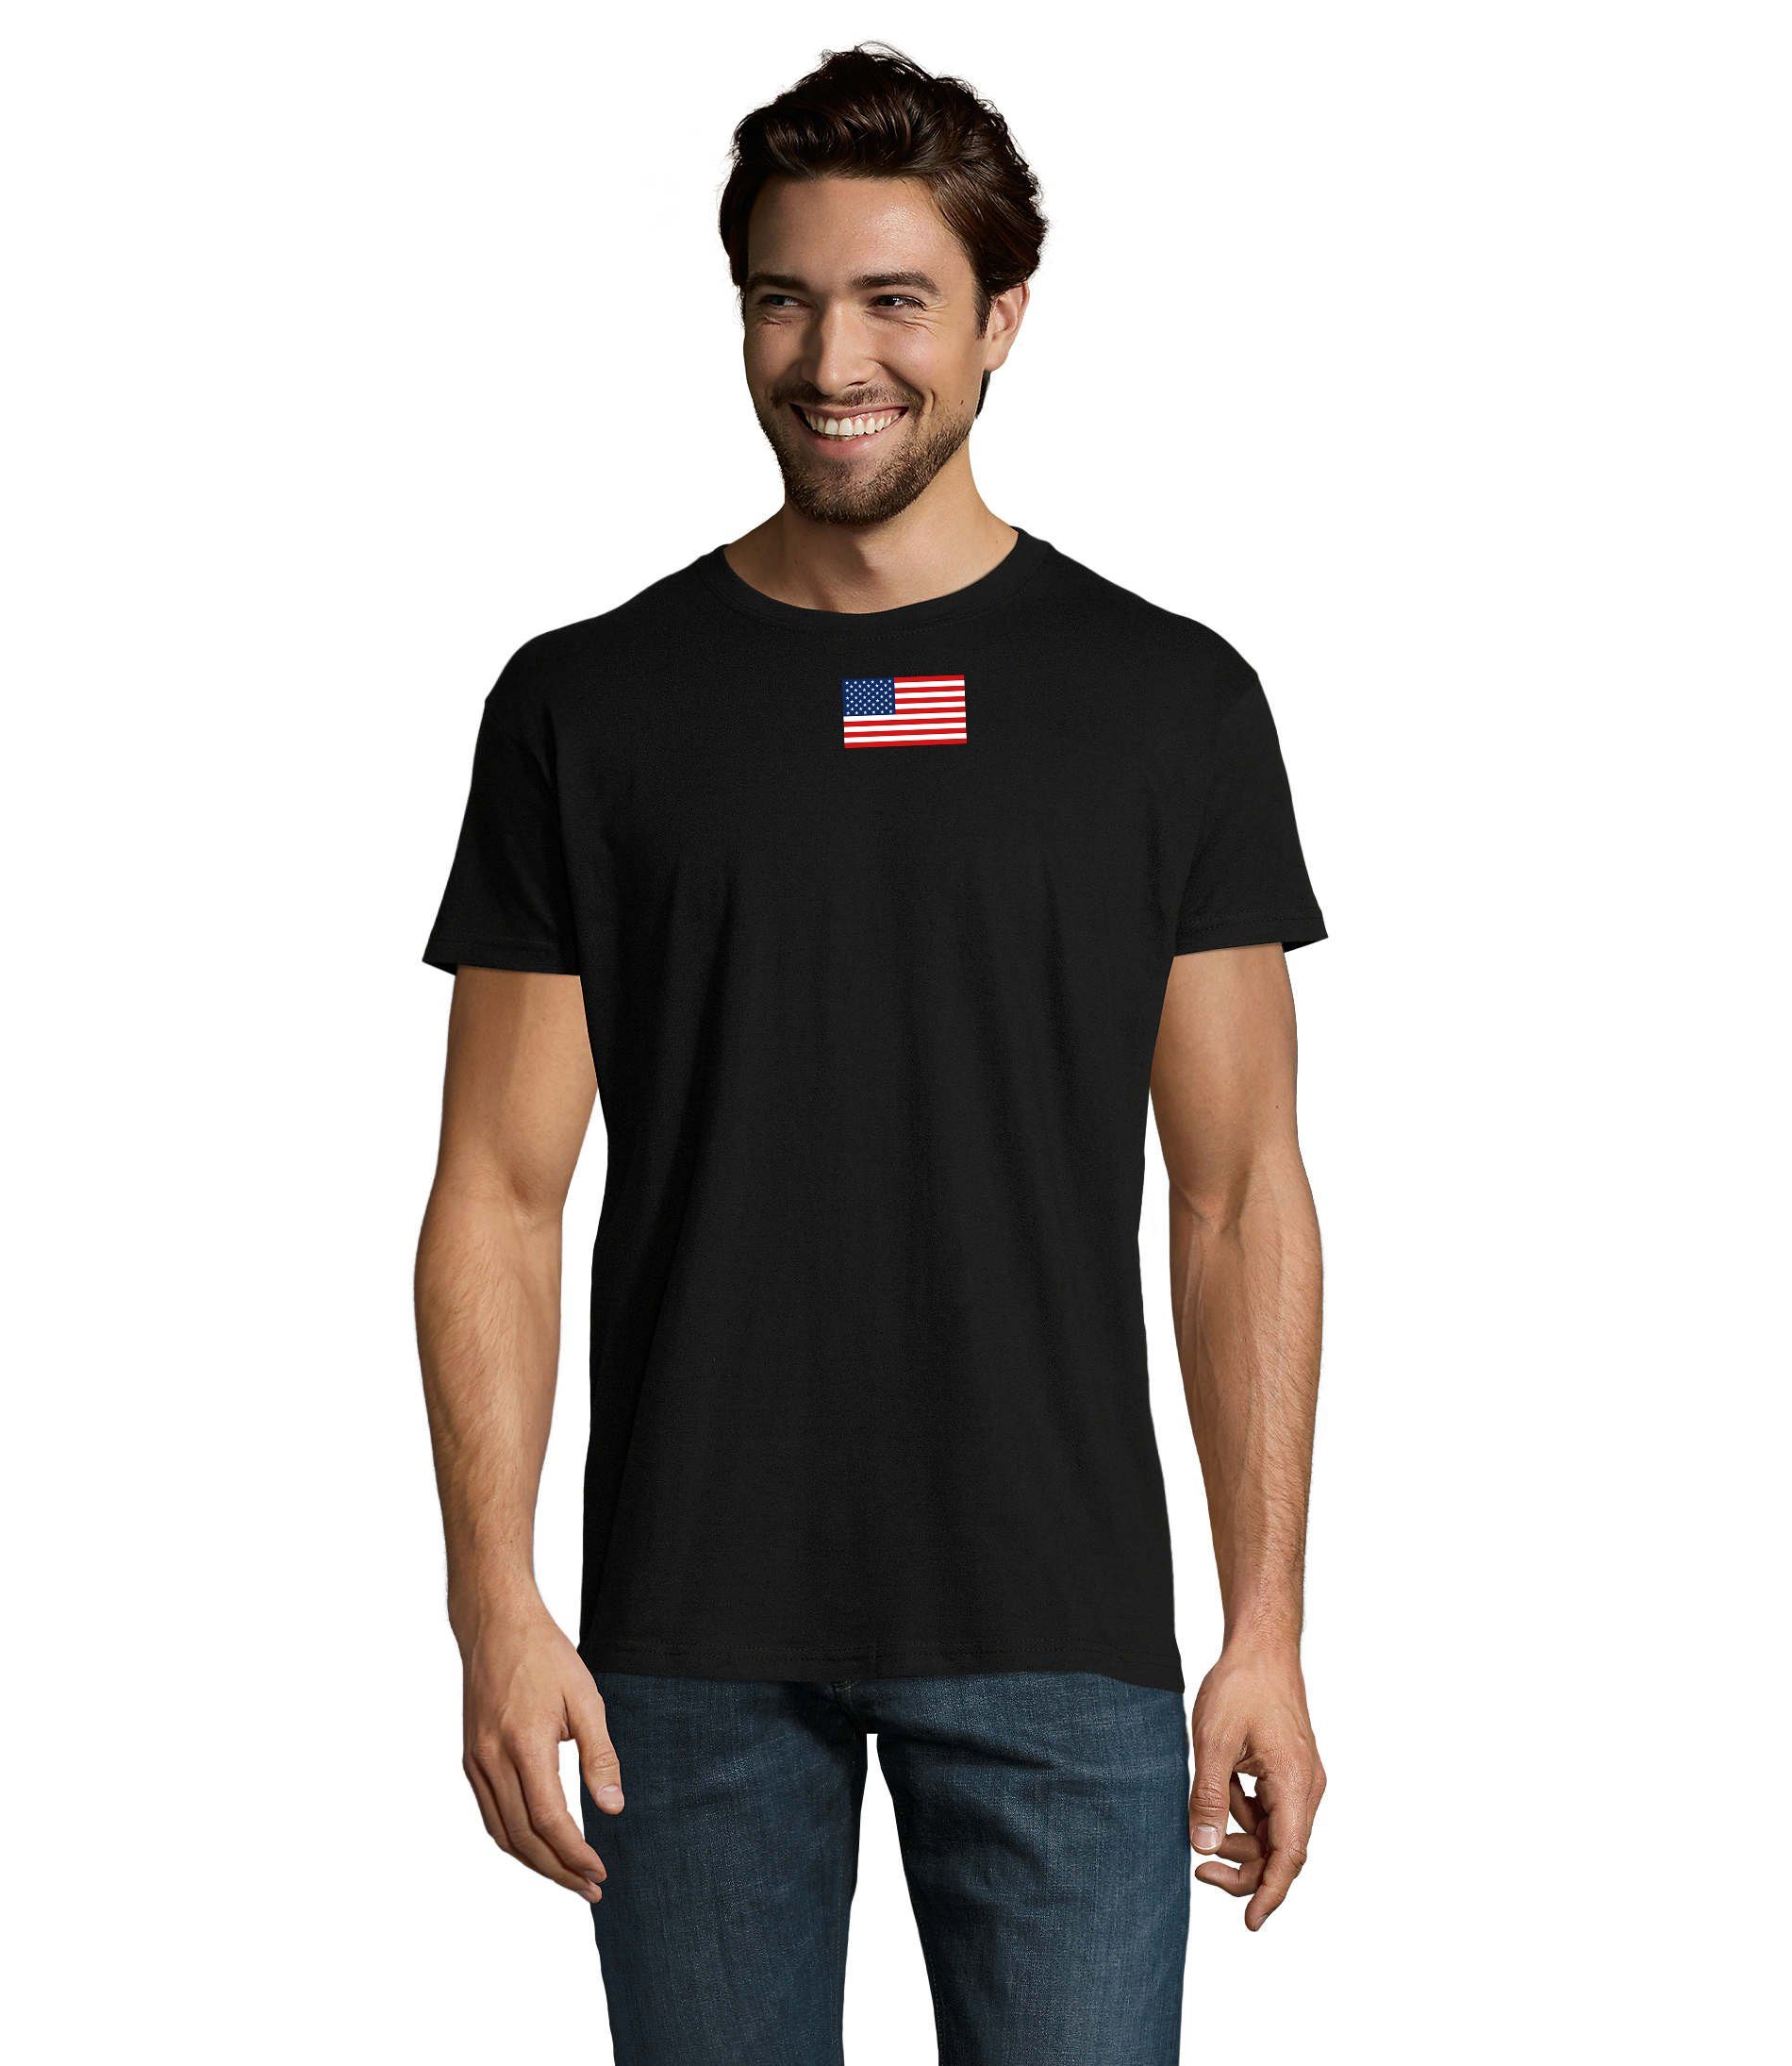 & Brownie von T-Shirt Air Army Nartion Schwarz Vereinigte USA Blondie Force Herren Amerika Staaten